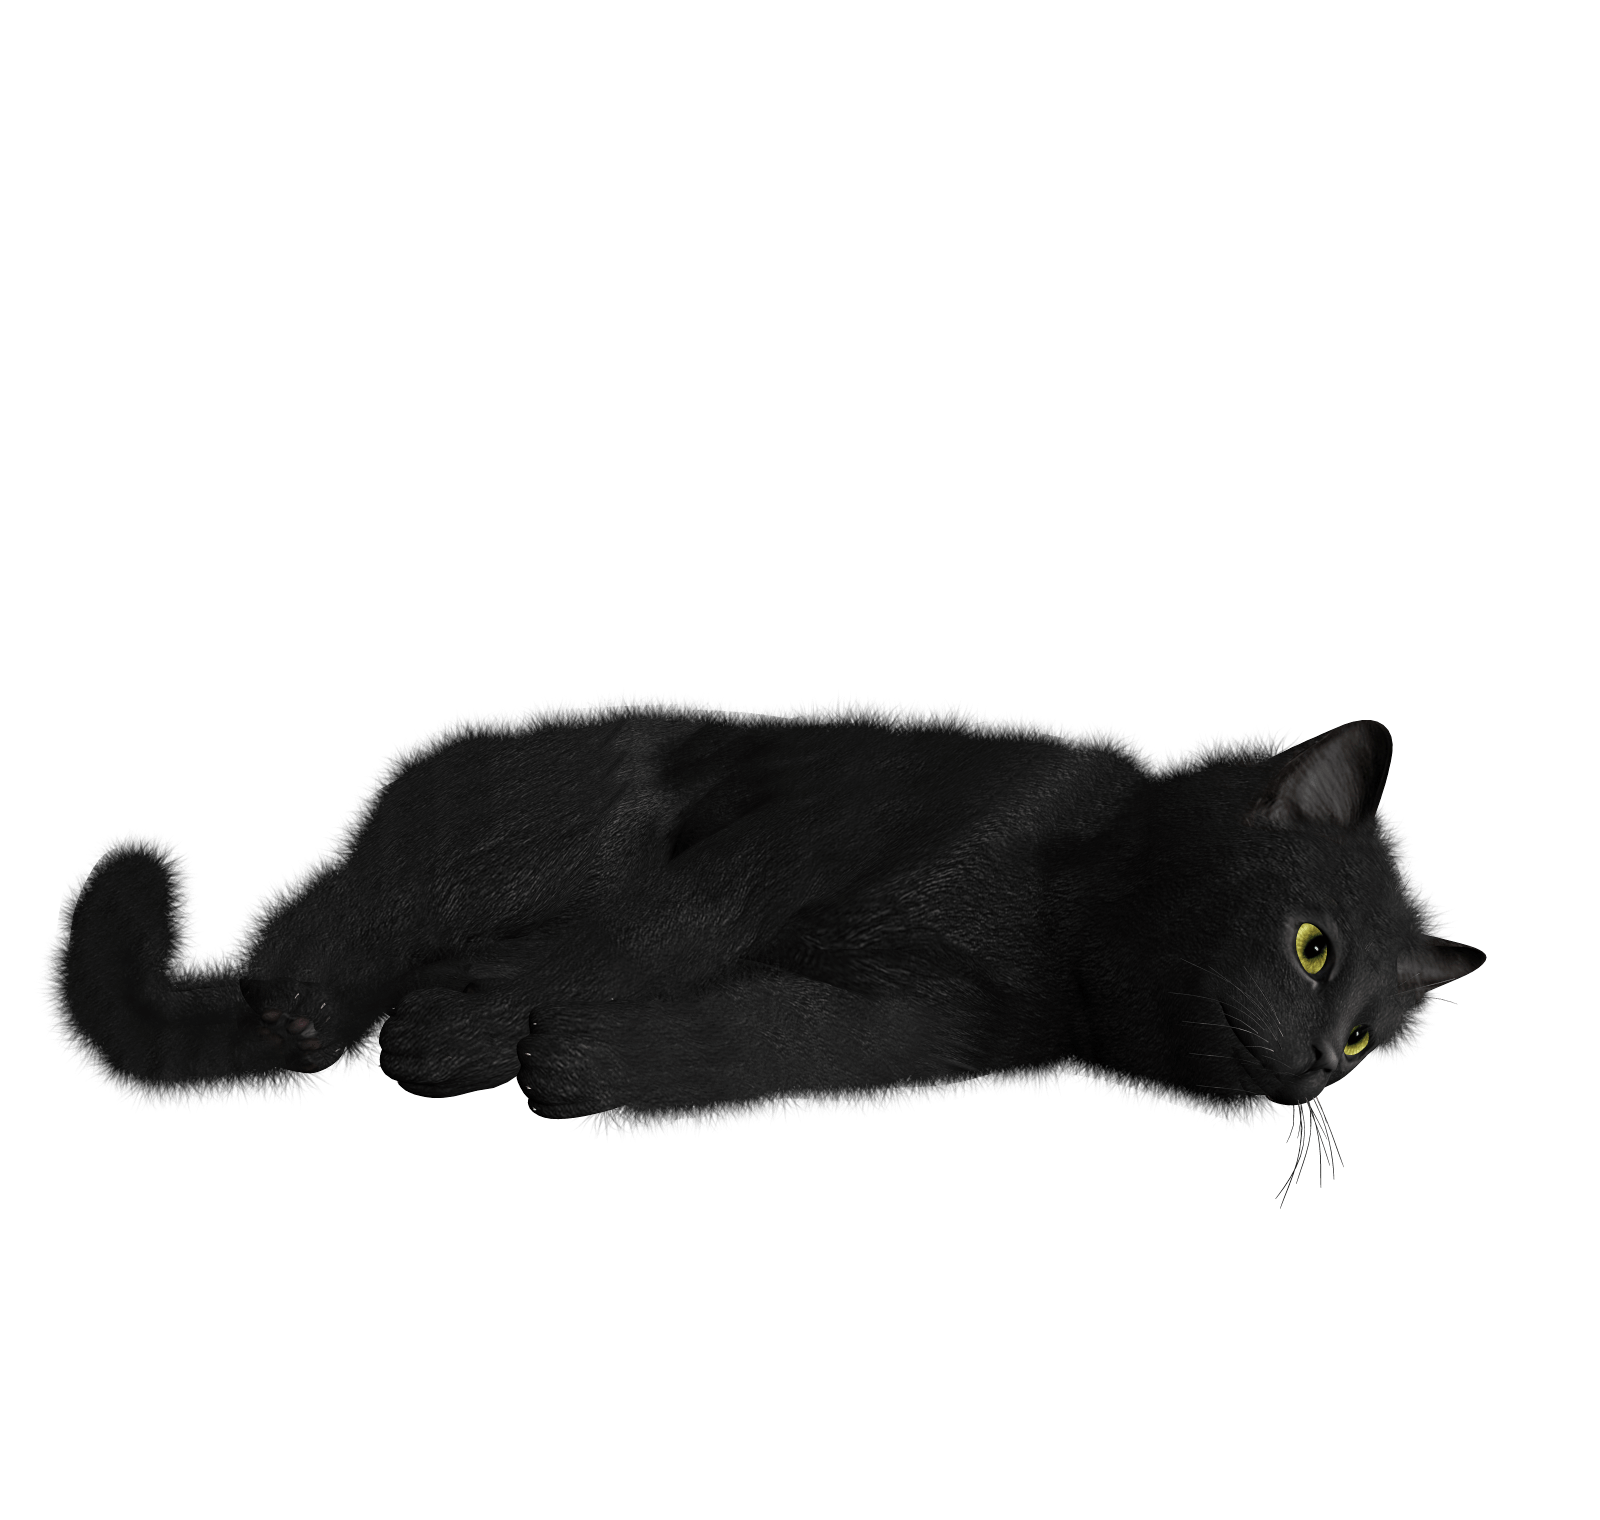 小黑猫PNG图片